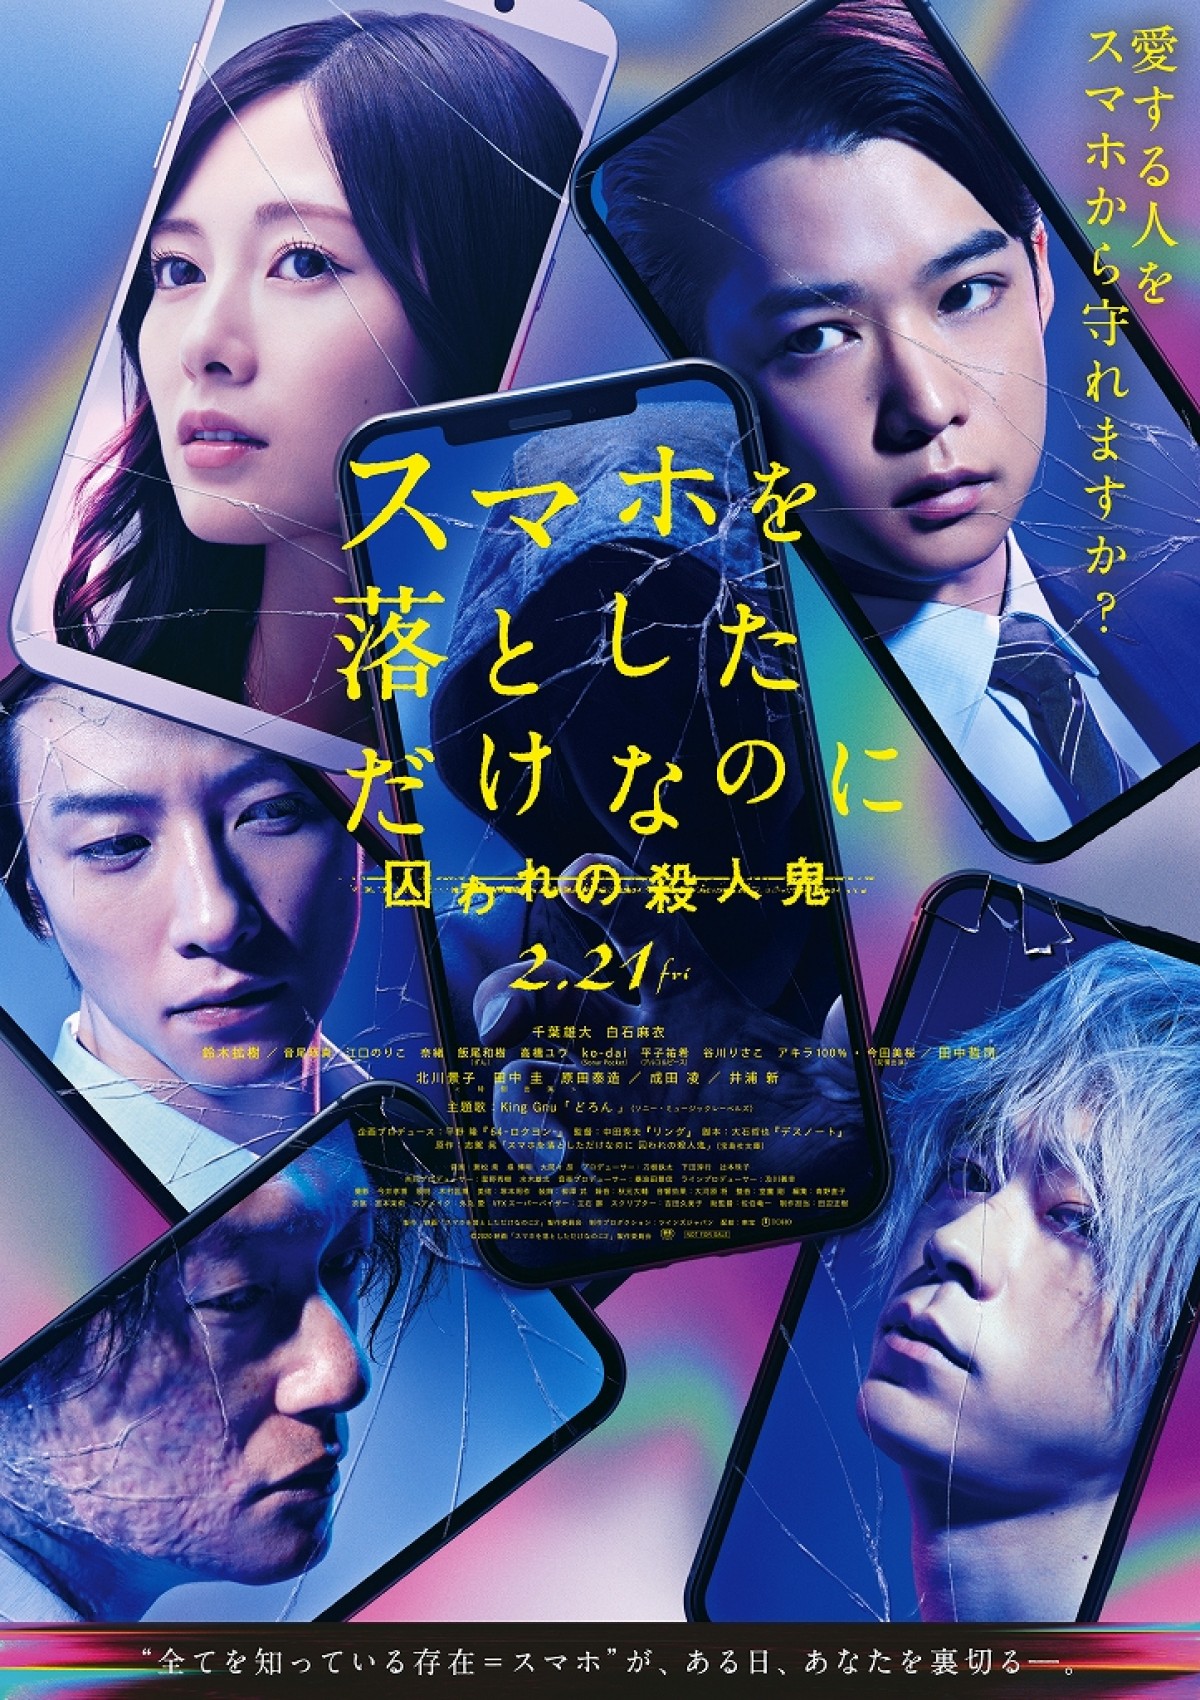 【映画ランキング】『パラサイト 半地下の家族』3週連続首位！『劇場版 SHIROBAKO』は3位発進